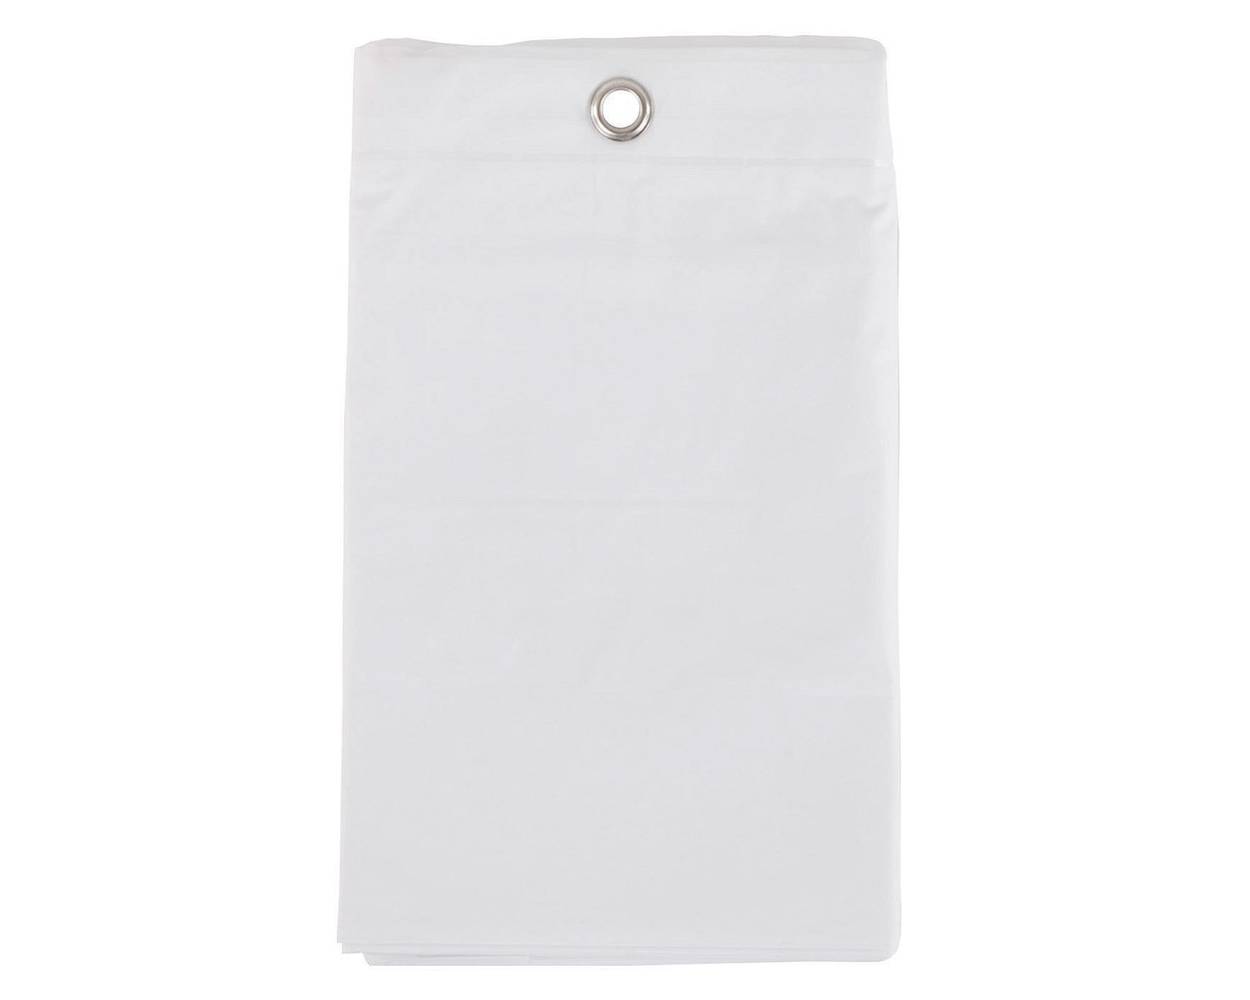 Cotidiana forro cortina 180x180 cm blanco (1 forro de cortina)